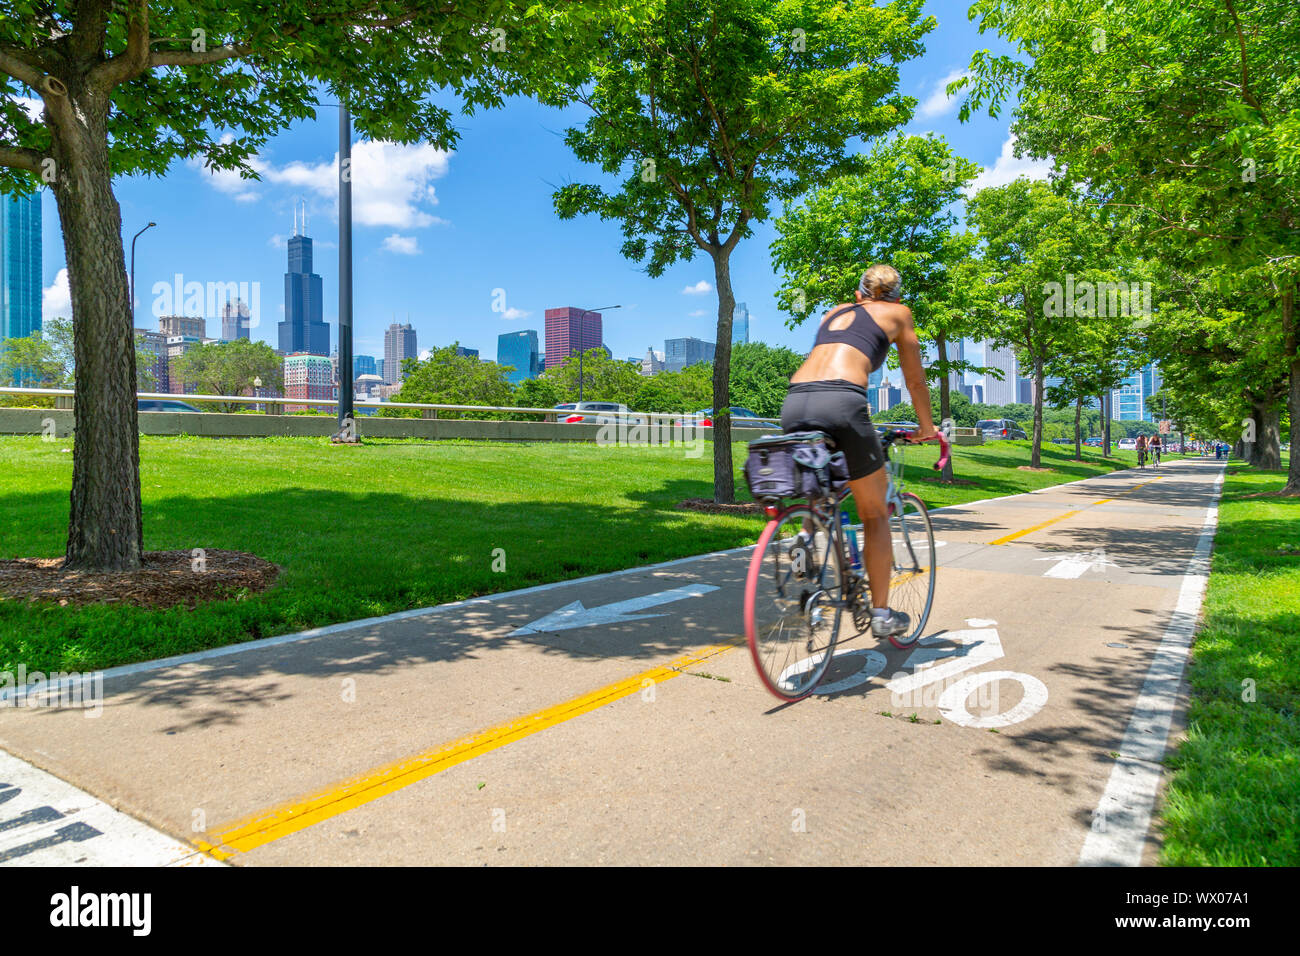 Vue d'horizon de Chicago et le cycliste sur South Lake Shore Drive, Chicago, Illinois, États-Unis d'Amérique, Amérique du Nord Banque D'Images